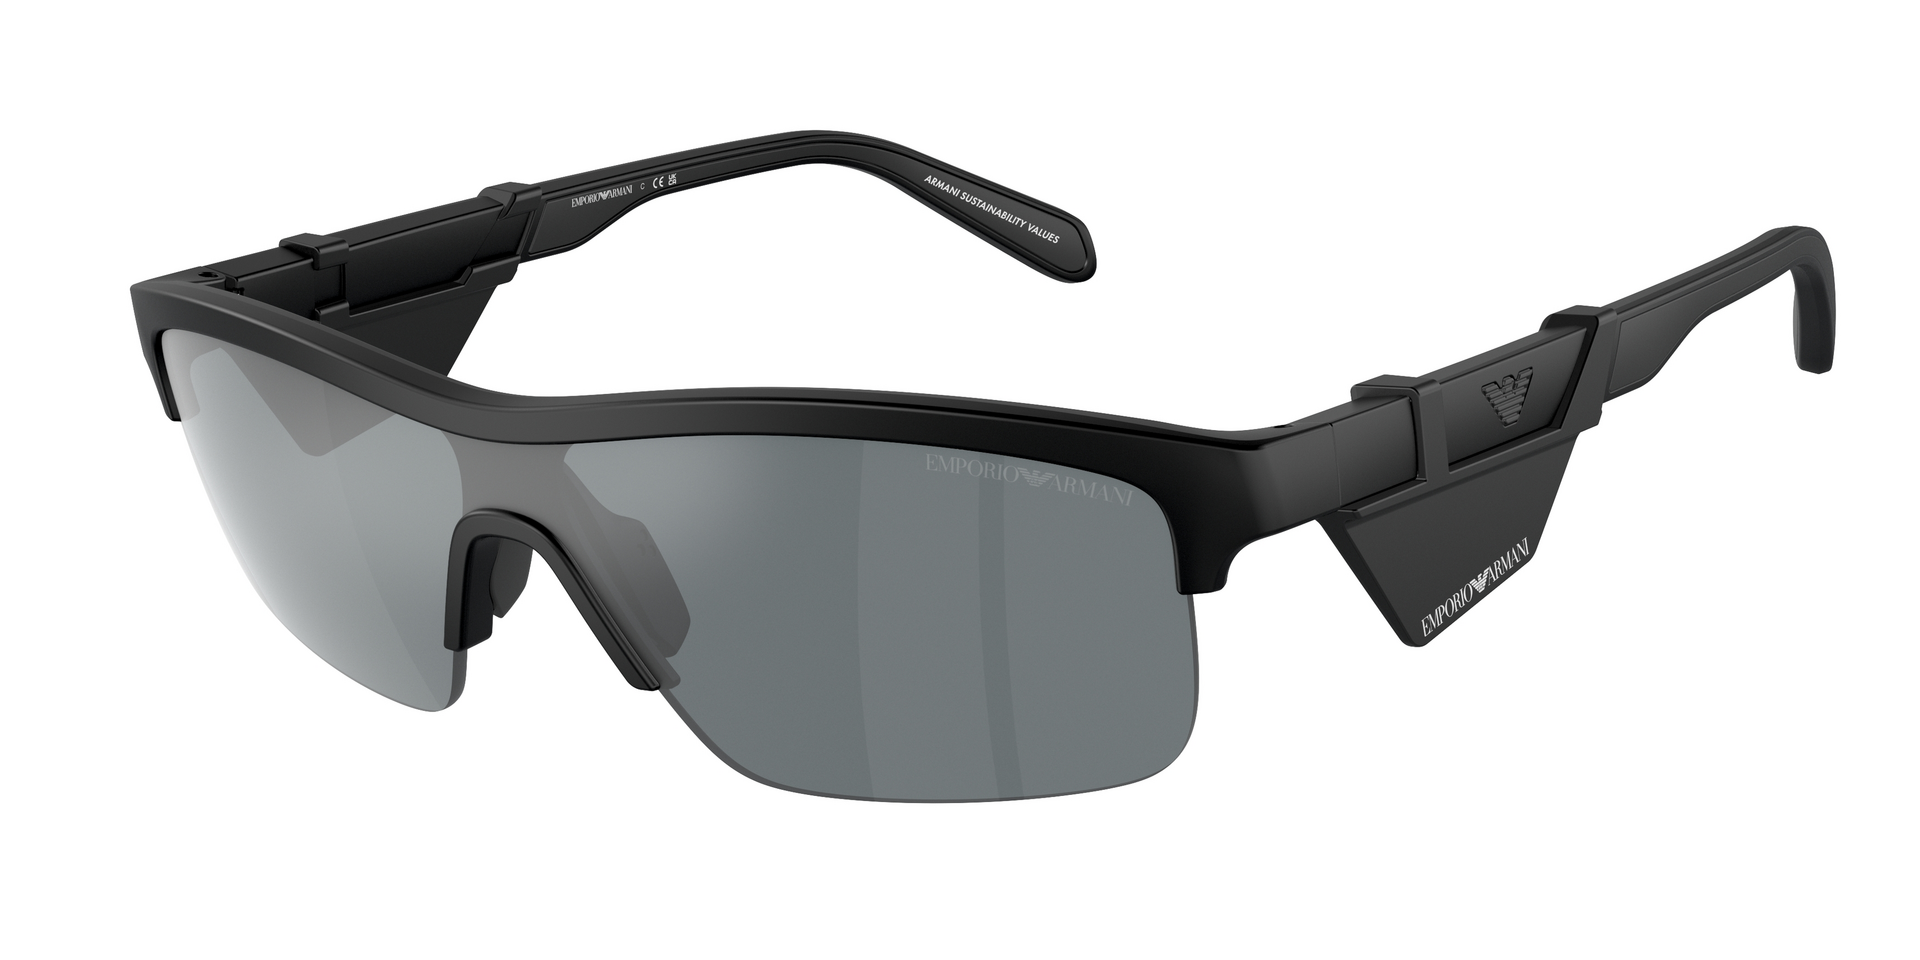 Das Bild zeigt die Sonnenbrille EA4218 50016G von der Marke Emporio Armani in Matt schwarz.